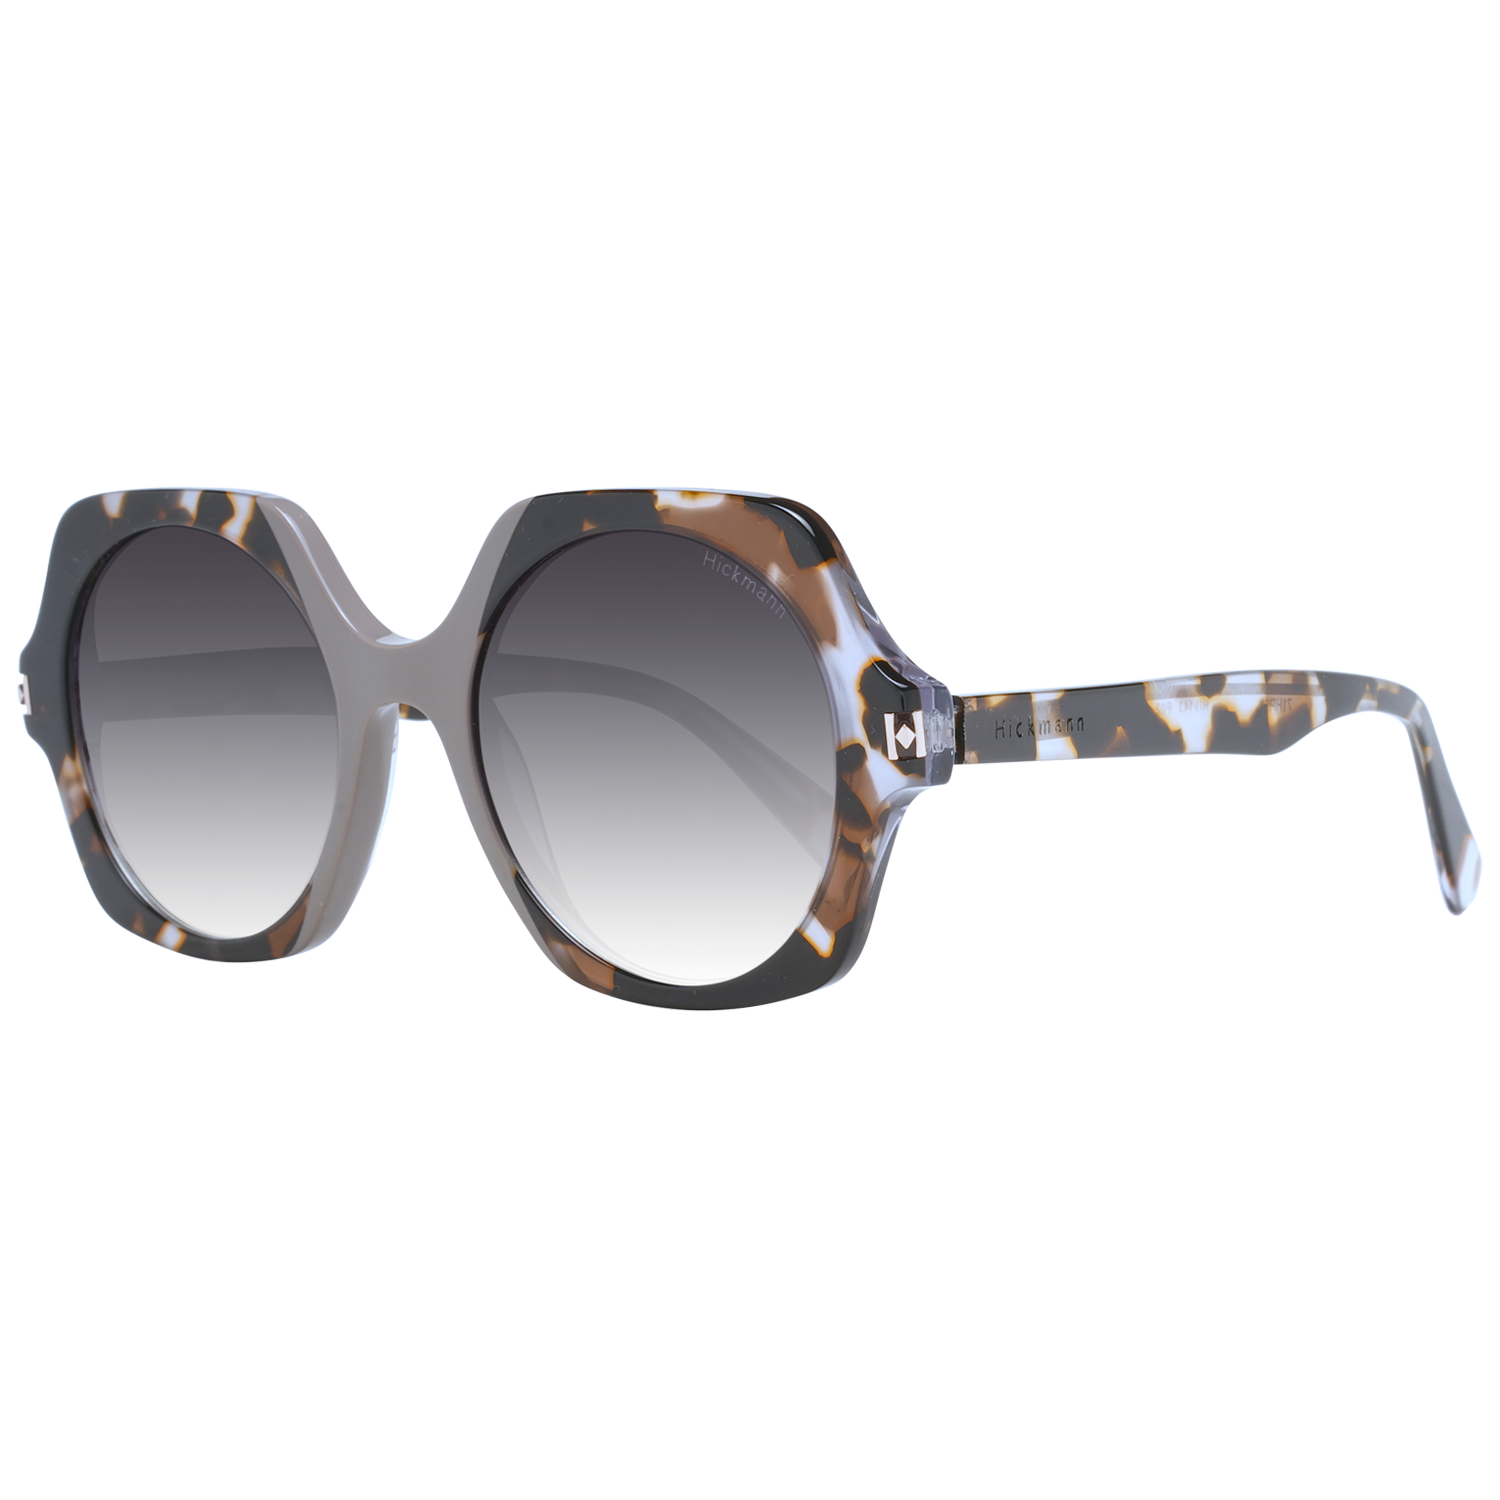 Dámské sluneční brýle Ana Hickmann HI9143 P02 50